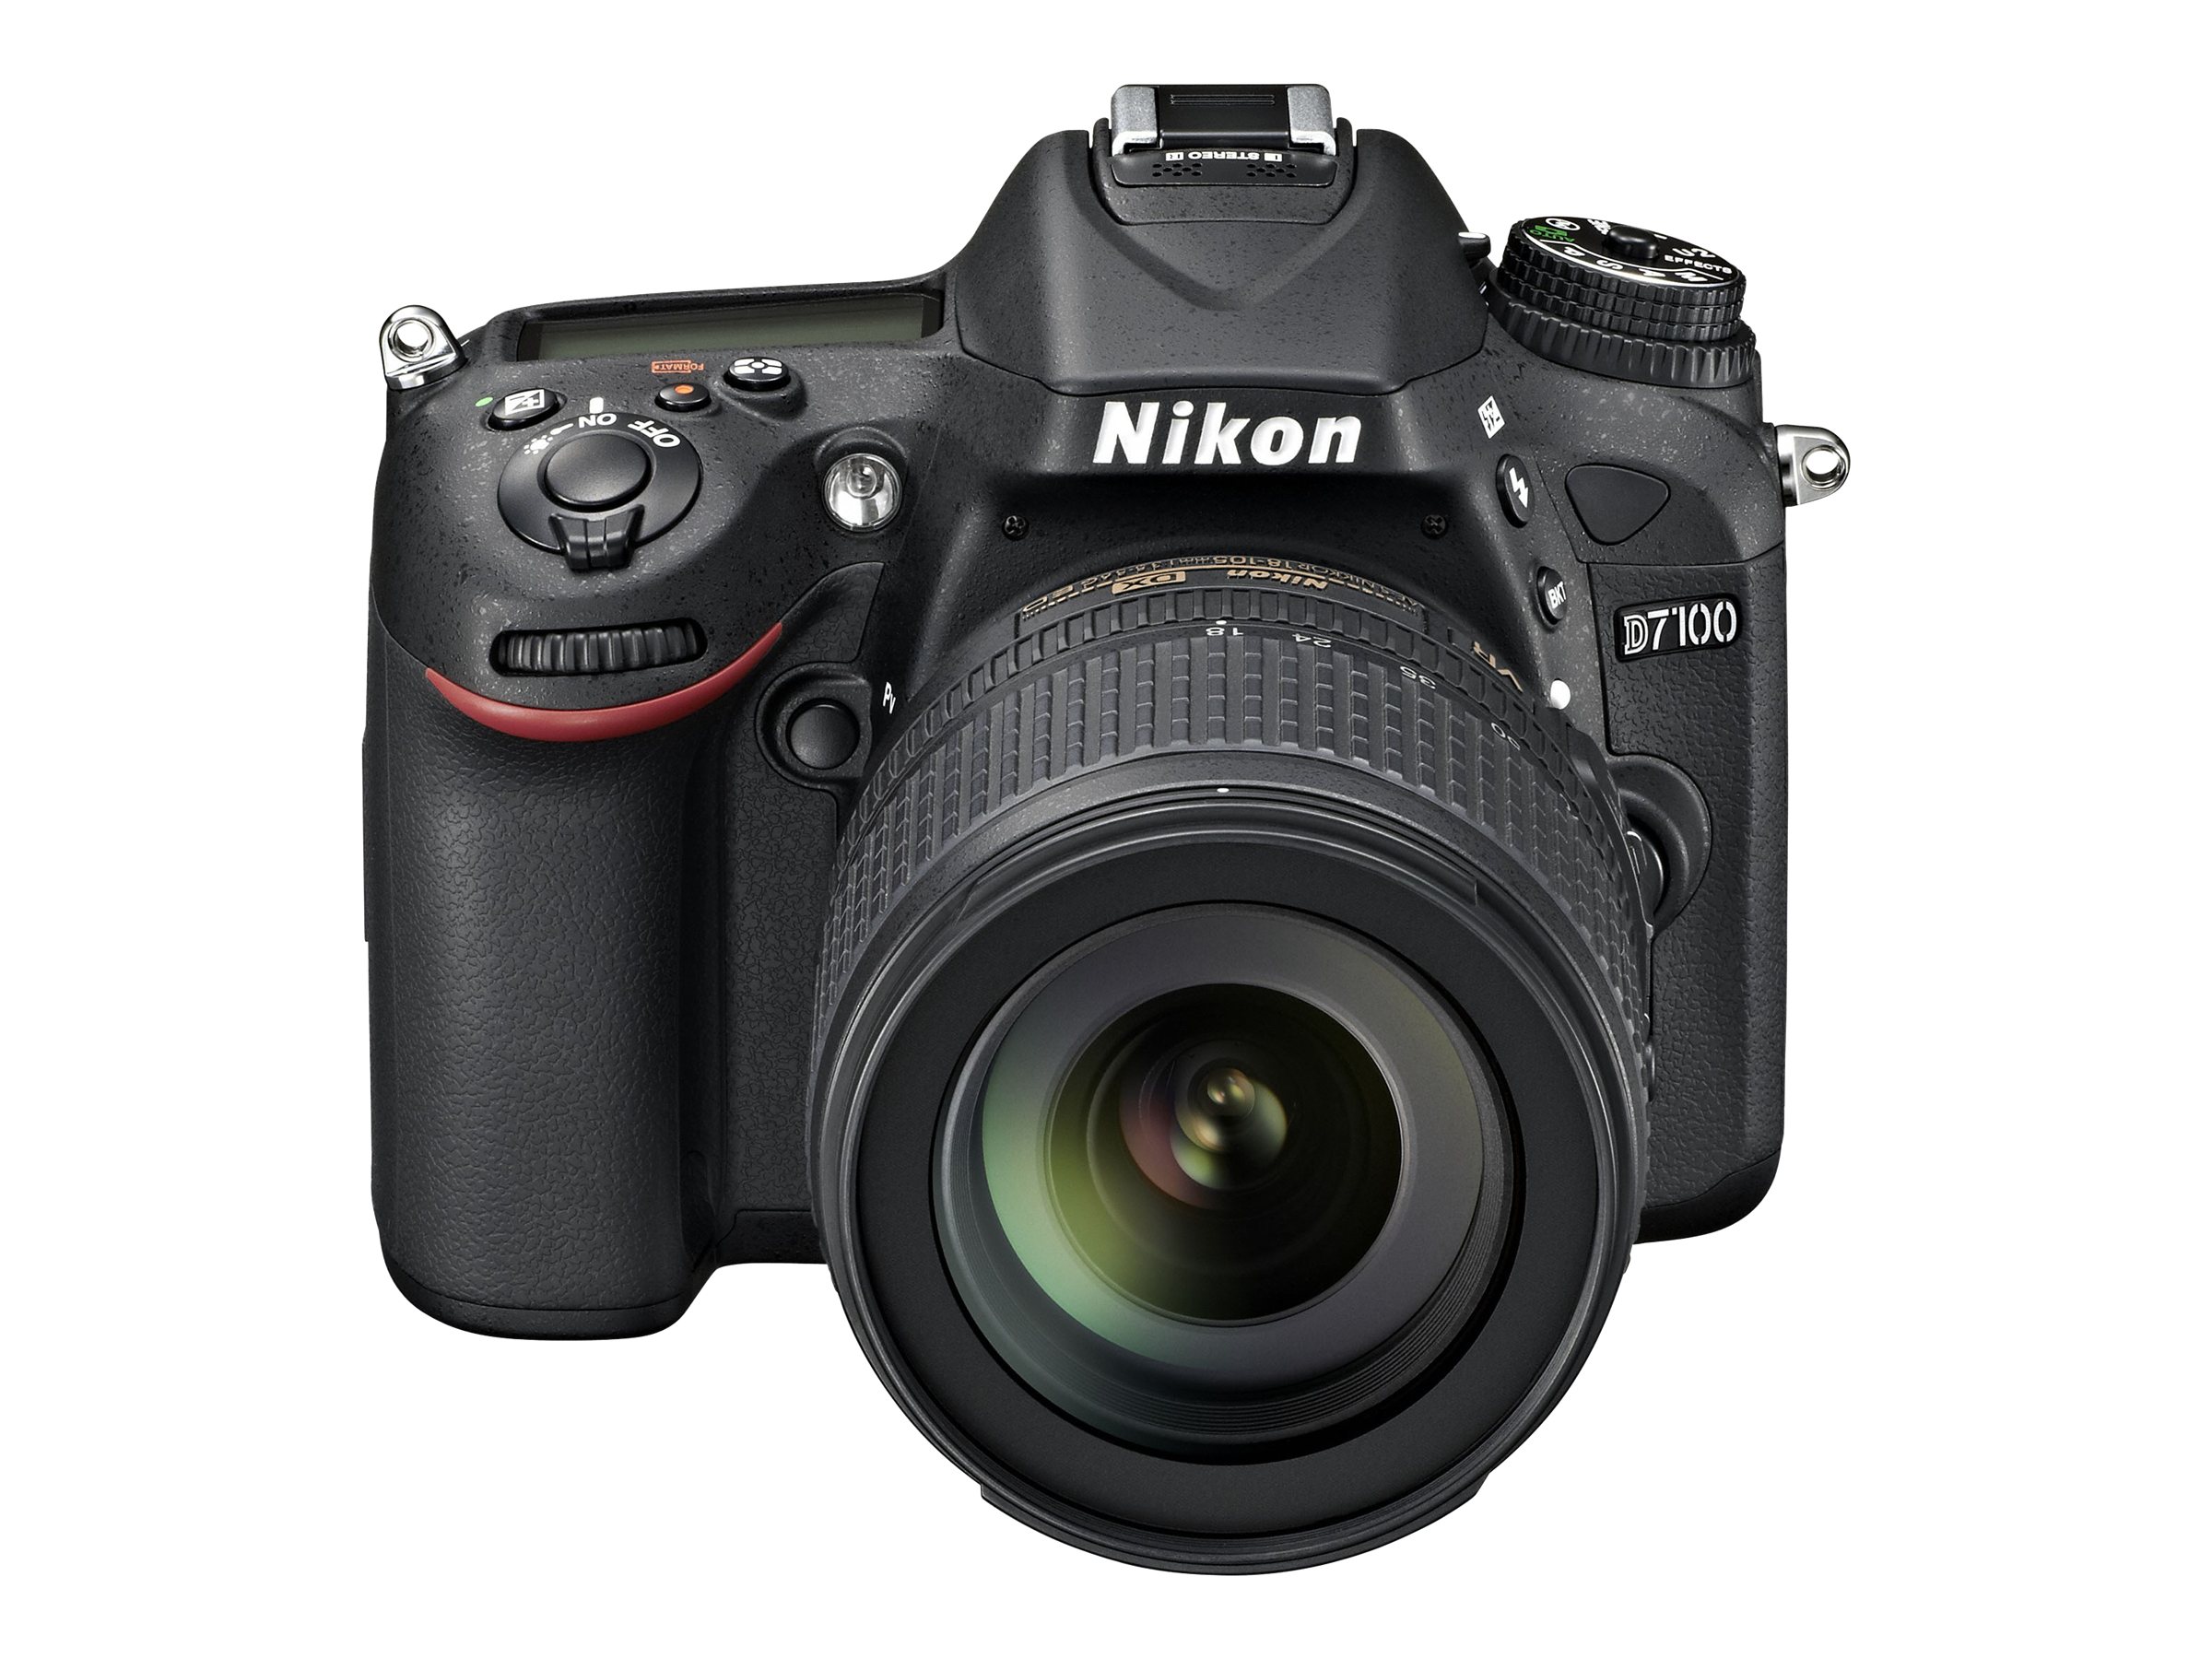 Nikon D7100 - Digital camera - SLR - 24.1 MP - APS-C - 7.8x optical zoom AF-S DX 18-140mm and AF-S 55-300mm VR lenses - black - image 2 of 5